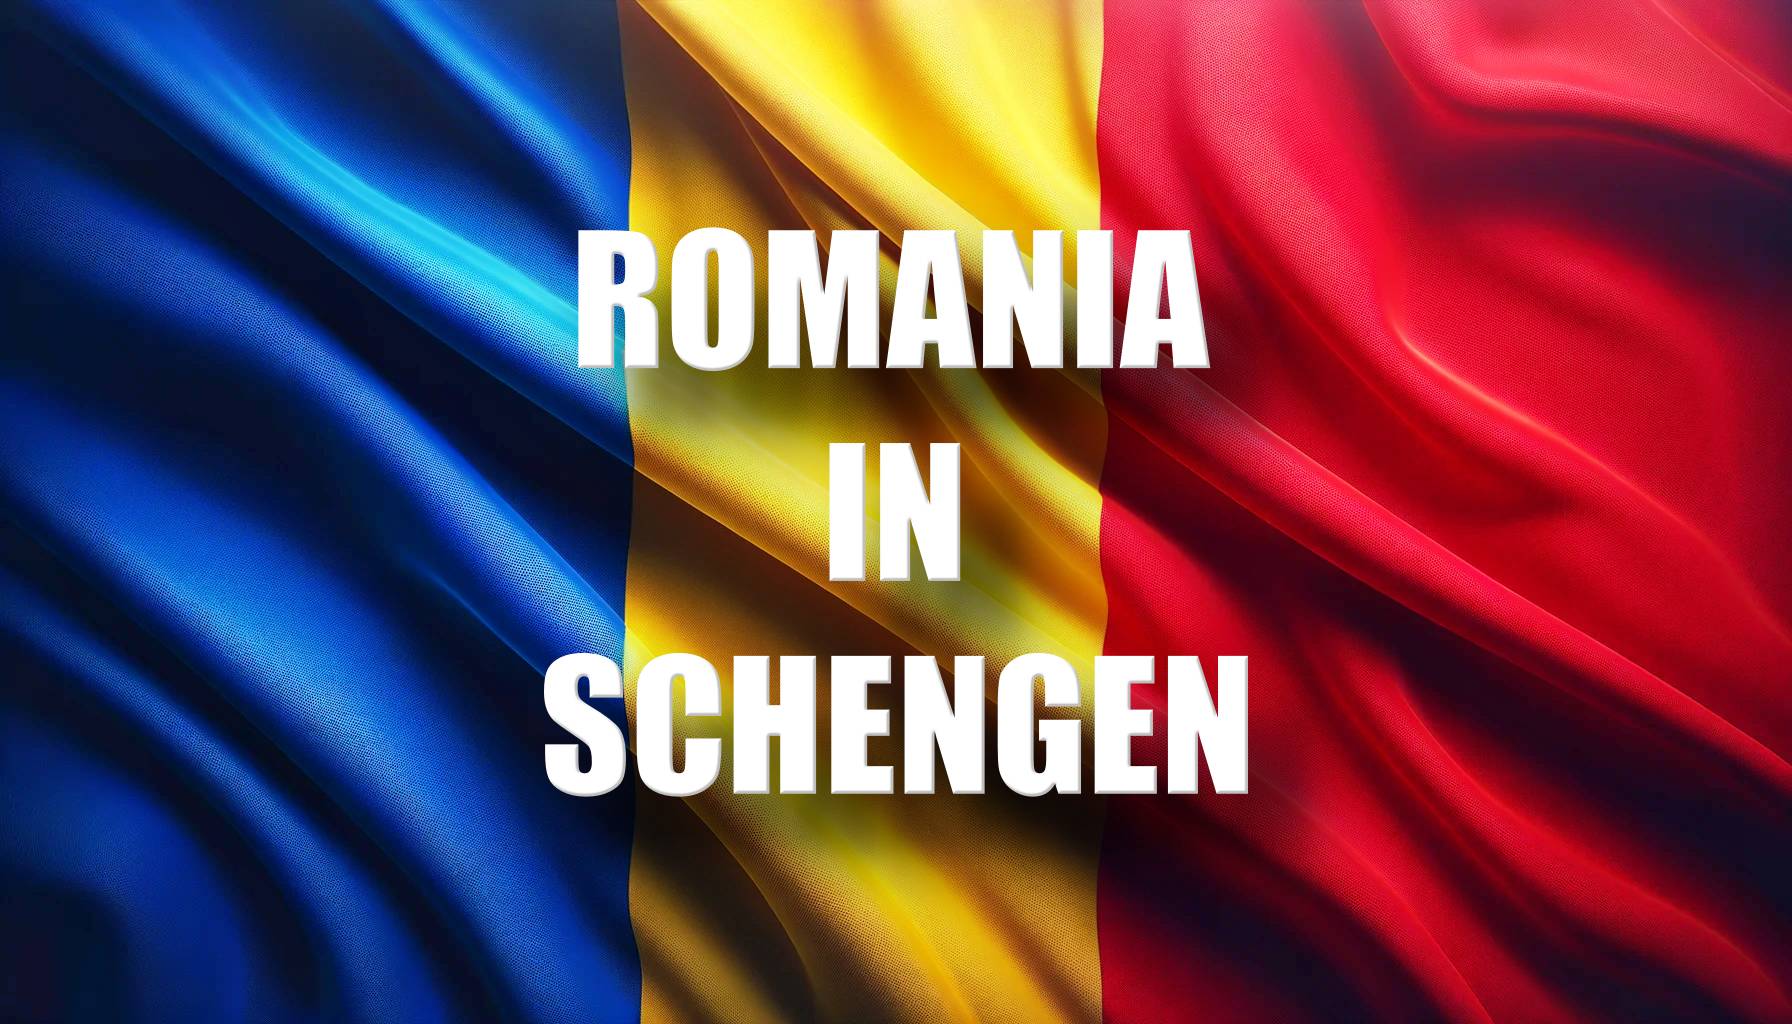 Romania Cattive notizie ULTIMO MOMENTO L'adesione a Schengen richiede molto tempo